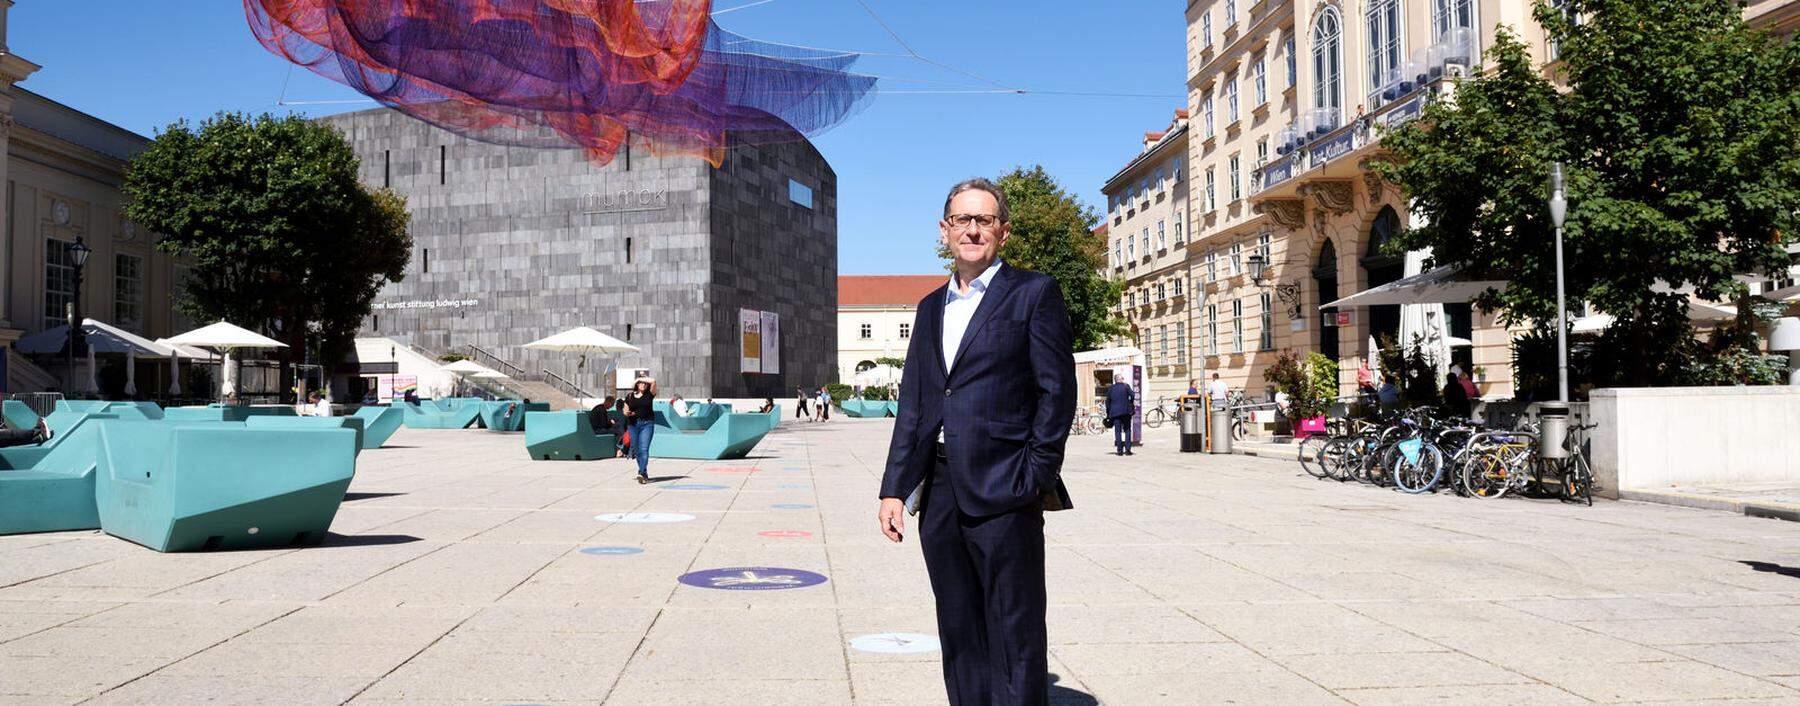 MQ-Direktor Christian Strasser. Die Netzskulptur über dem Haupthof ist anlässlich des 20-Jahr-Jubiläums des Museumsareals zu sehen.